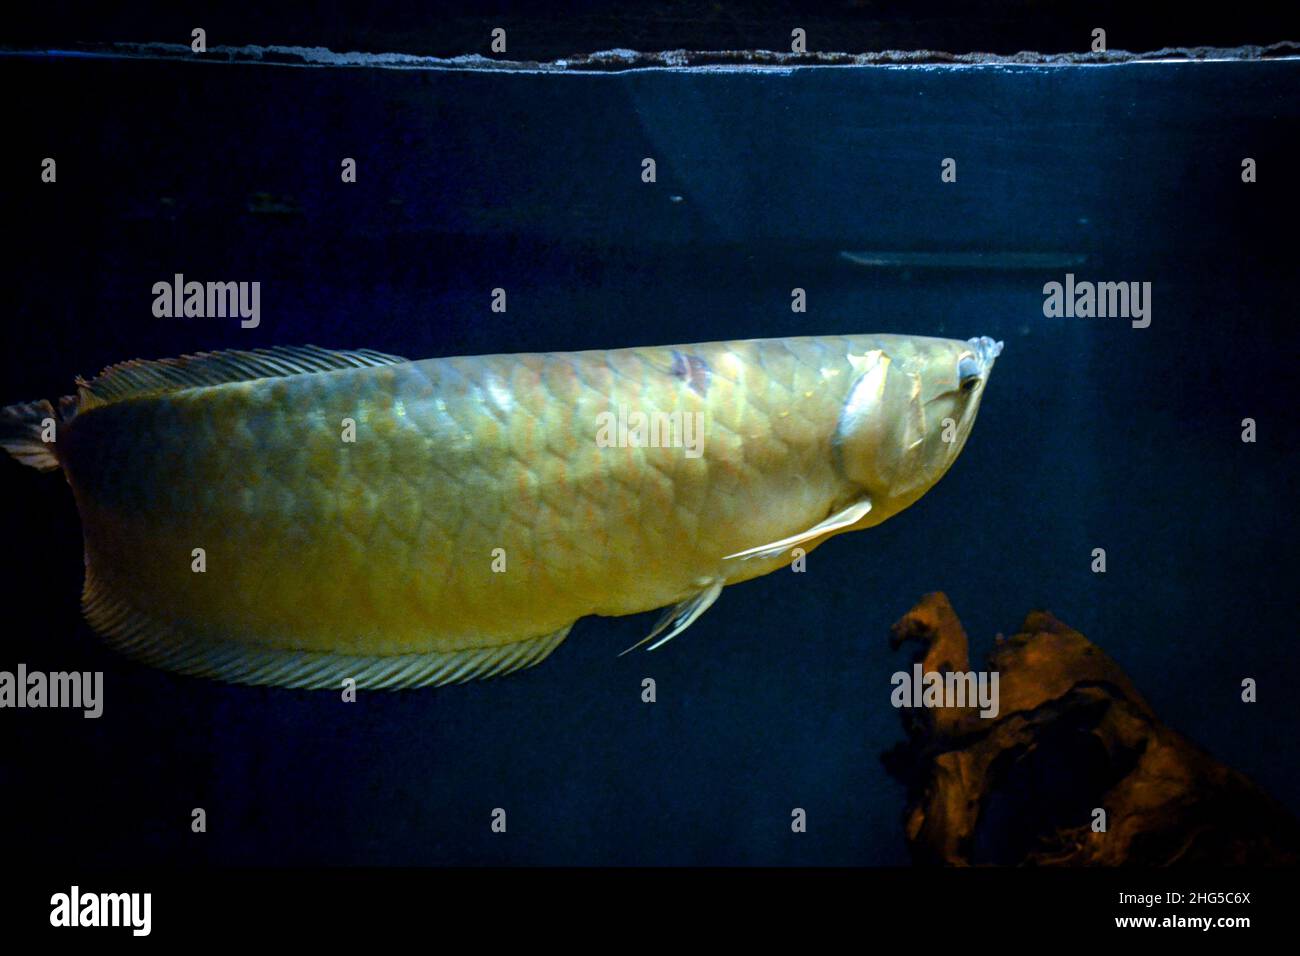 Arowana fish swimming below water surface Stock Photo